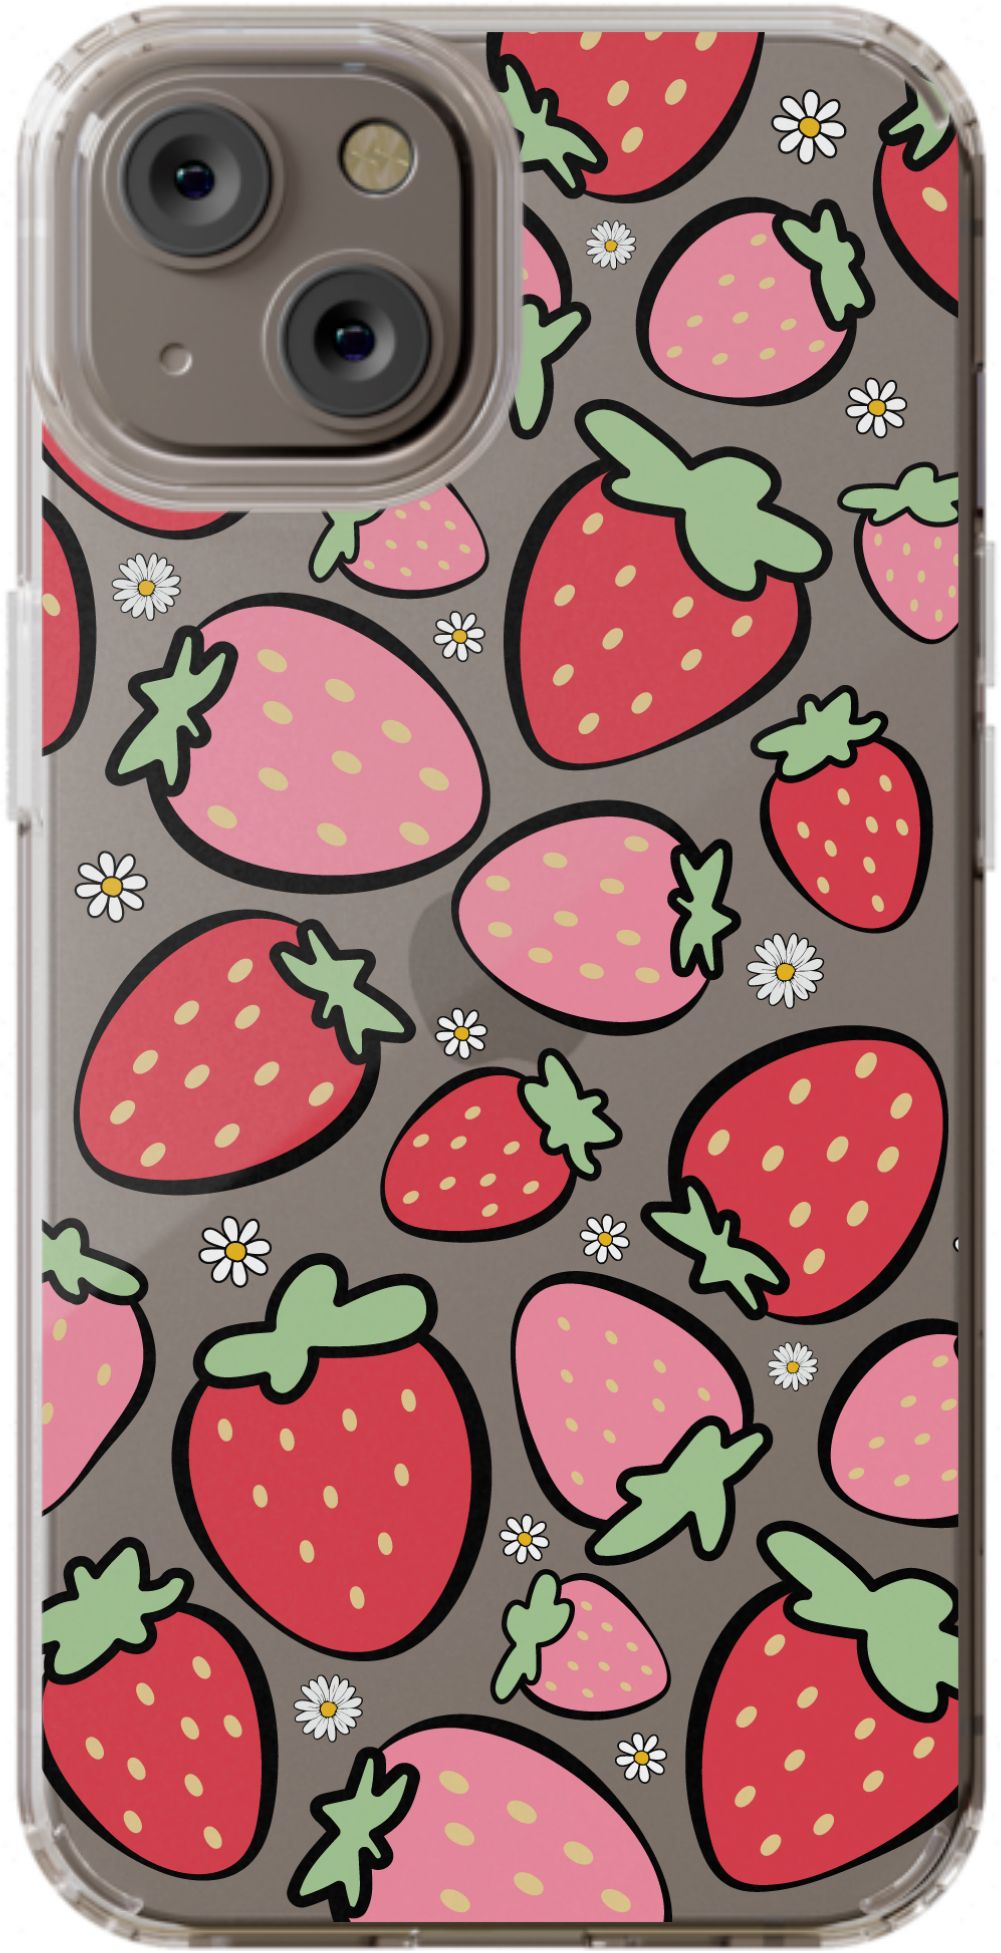 Strawberry Daisy - daziecases